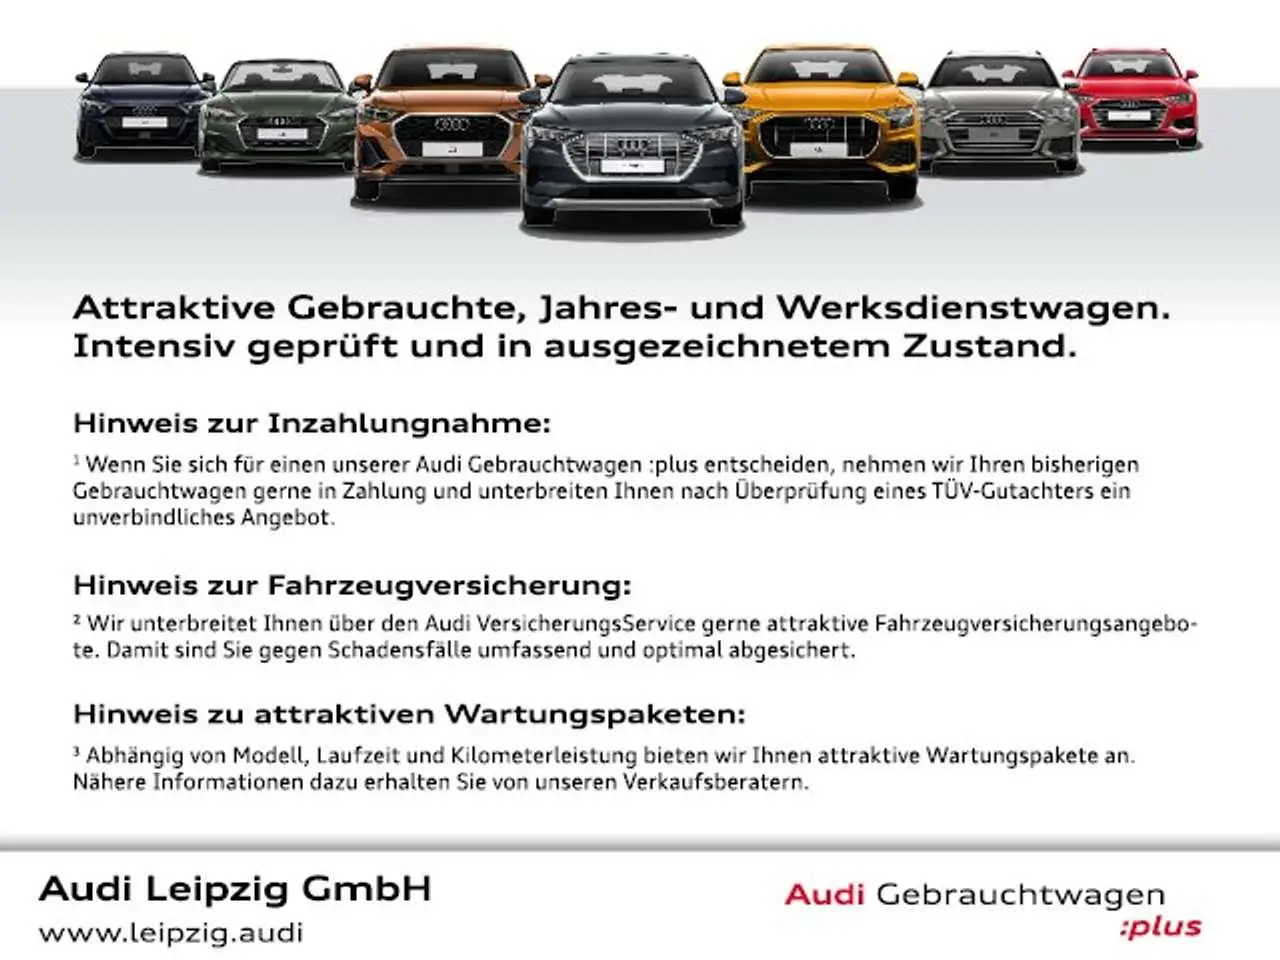 Photo 1 : Audi Q3 2020 Diesel